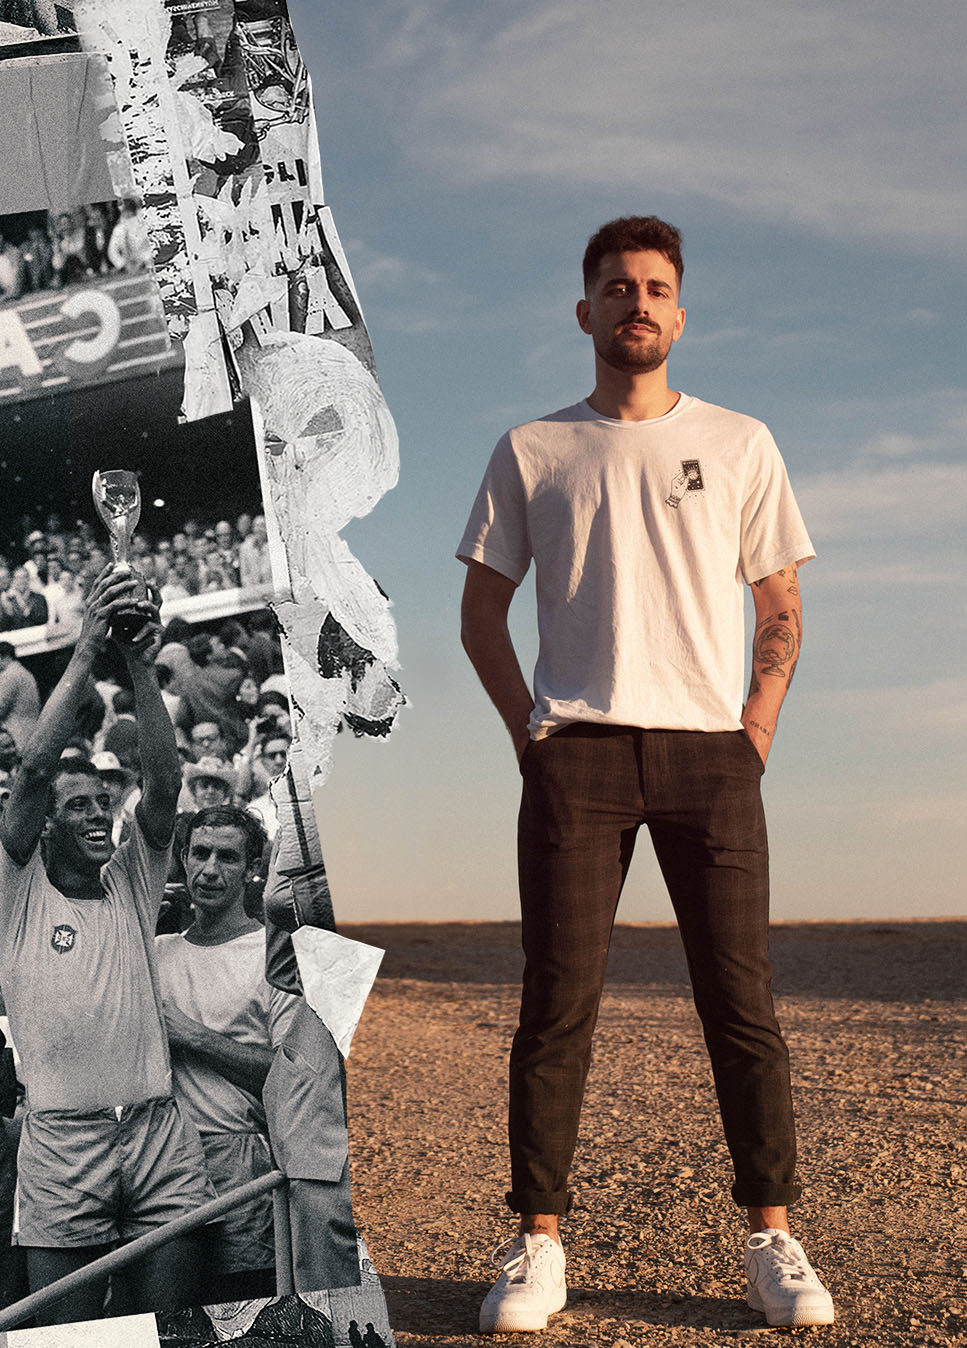 Modelo masculino con camiseta blaca de la marca Madson casual football con ilustración de jugador de fútbol en el pecho y la leyenda de "Support your local team"